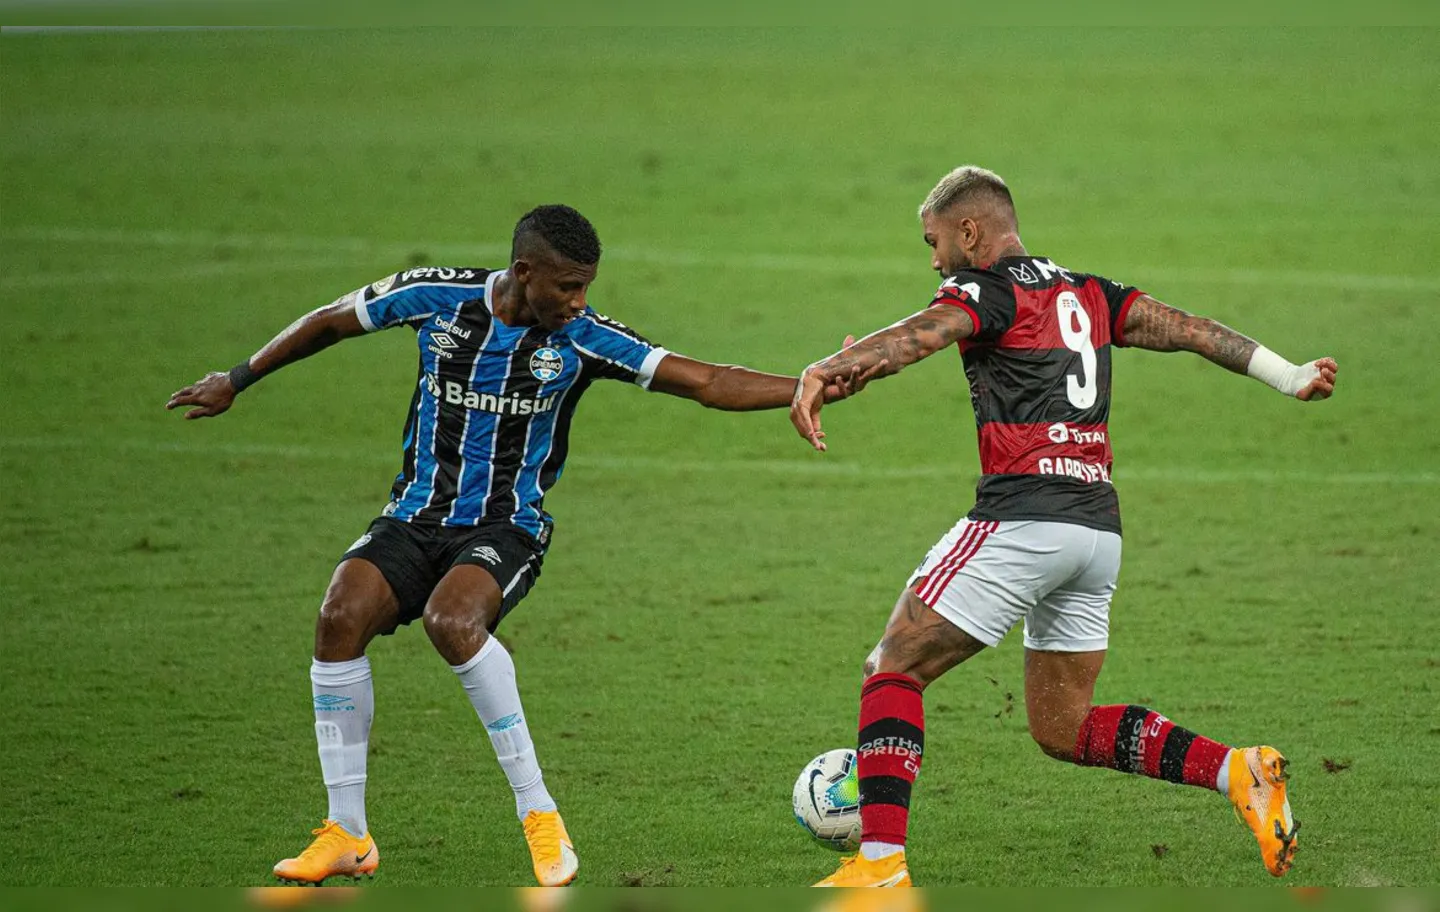 Partida é válida pela 23ª rodada da Série A do Campeonato Brasileiro | Foto: Alexandre Vidal | Flamengo